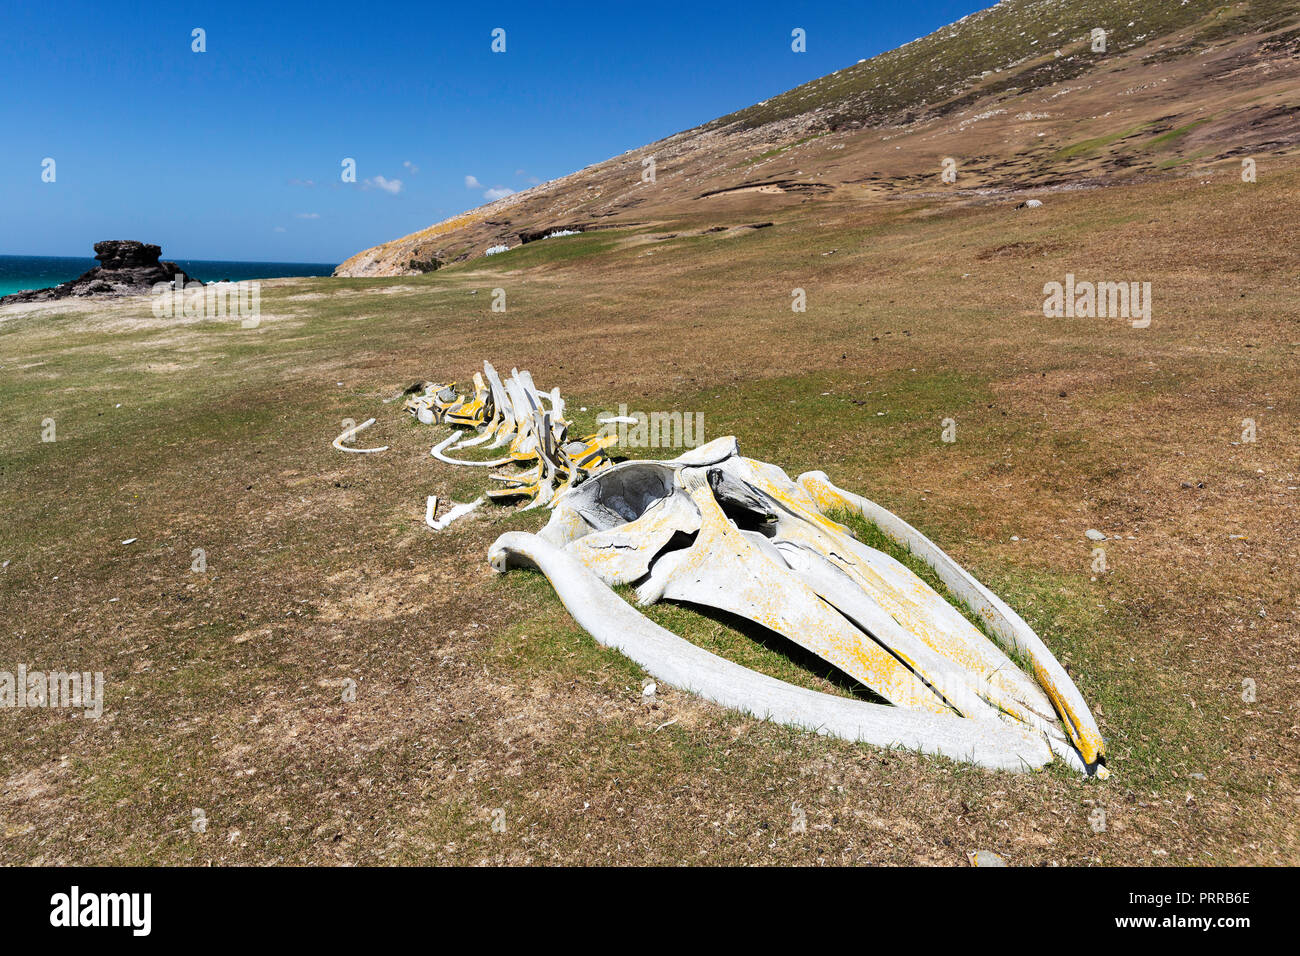 Les restes du squelette d'un rorqual boréal, jeunes échoués Balaenoptera borealis, rassemblés sur l'Île Saunders, Falklands Banque D'Images